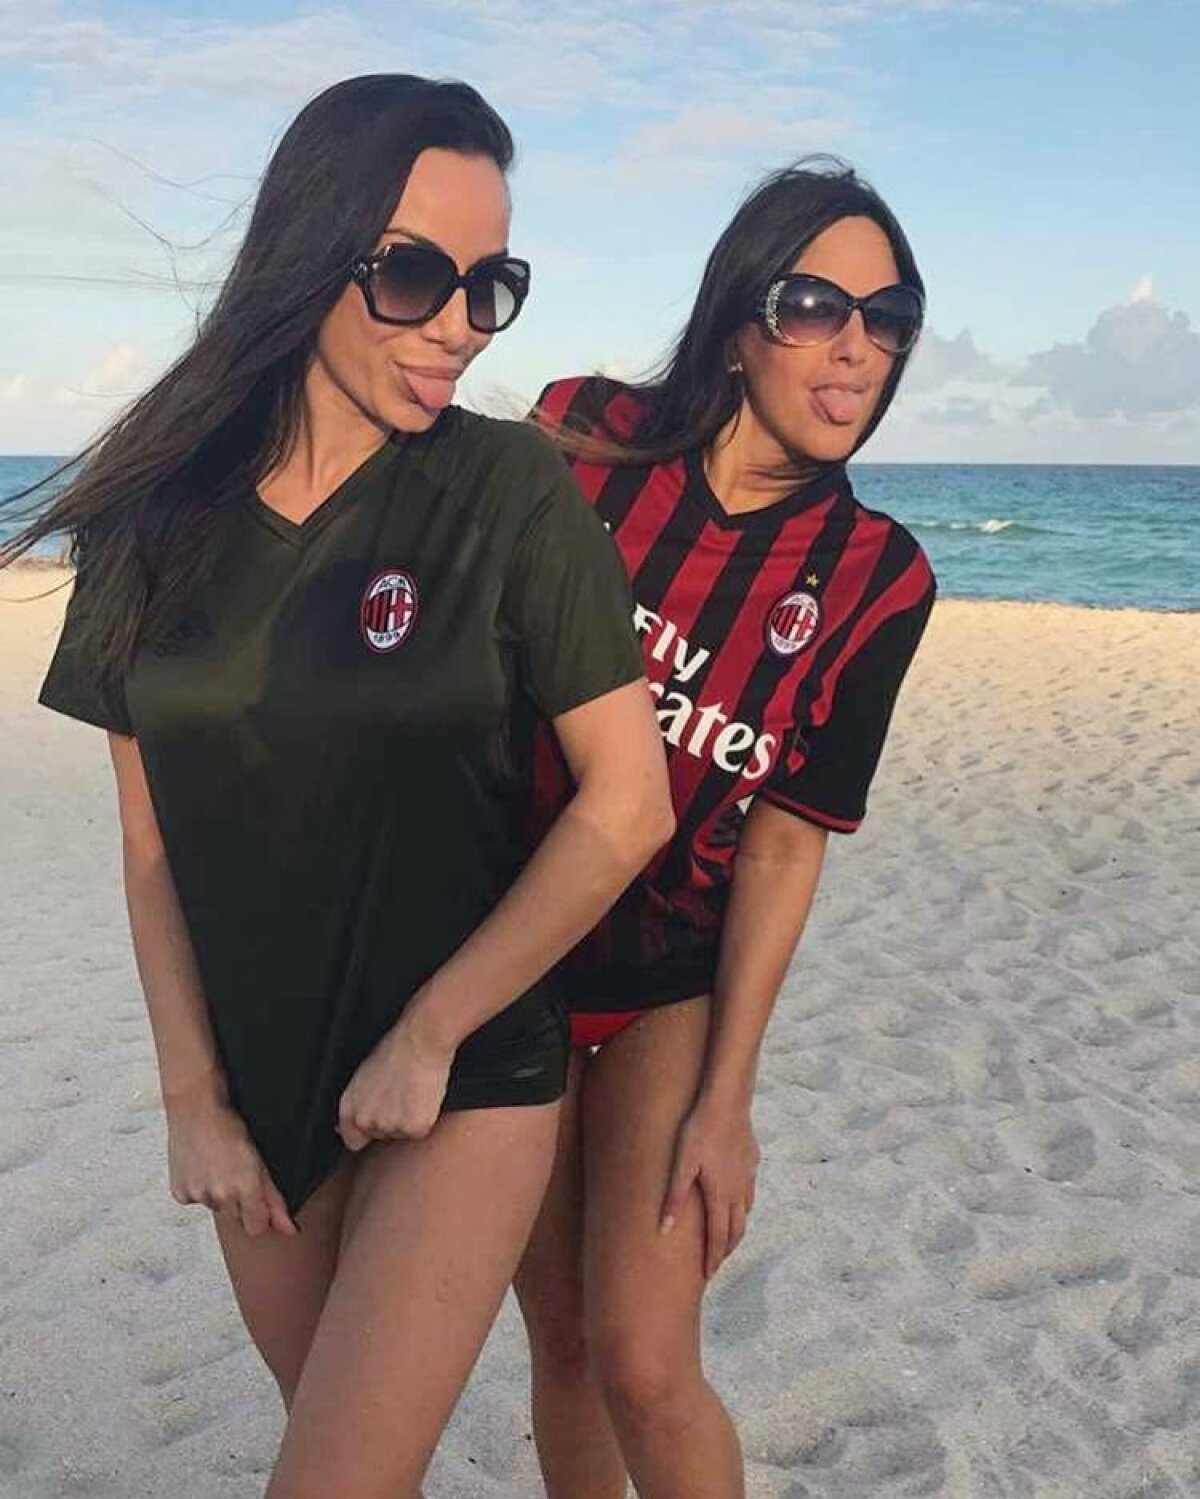 FOTO Elisa nu se desparte de tricoul Milanului: un fotomodel își arată pasiunea pentru echipa favorită